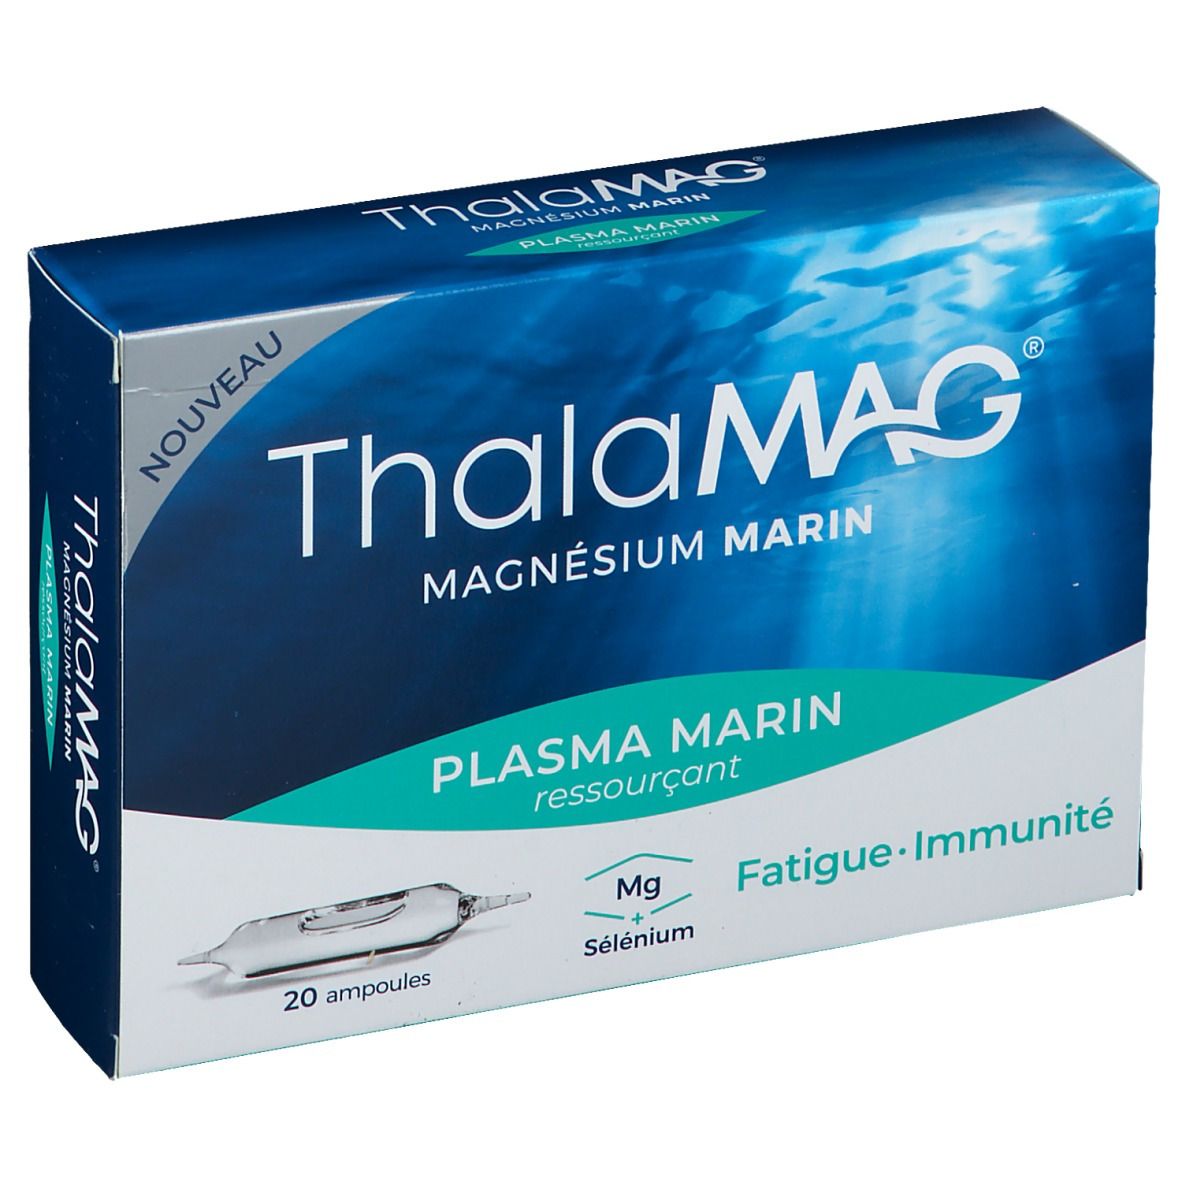 ThalaMAG® Magnésium Marin